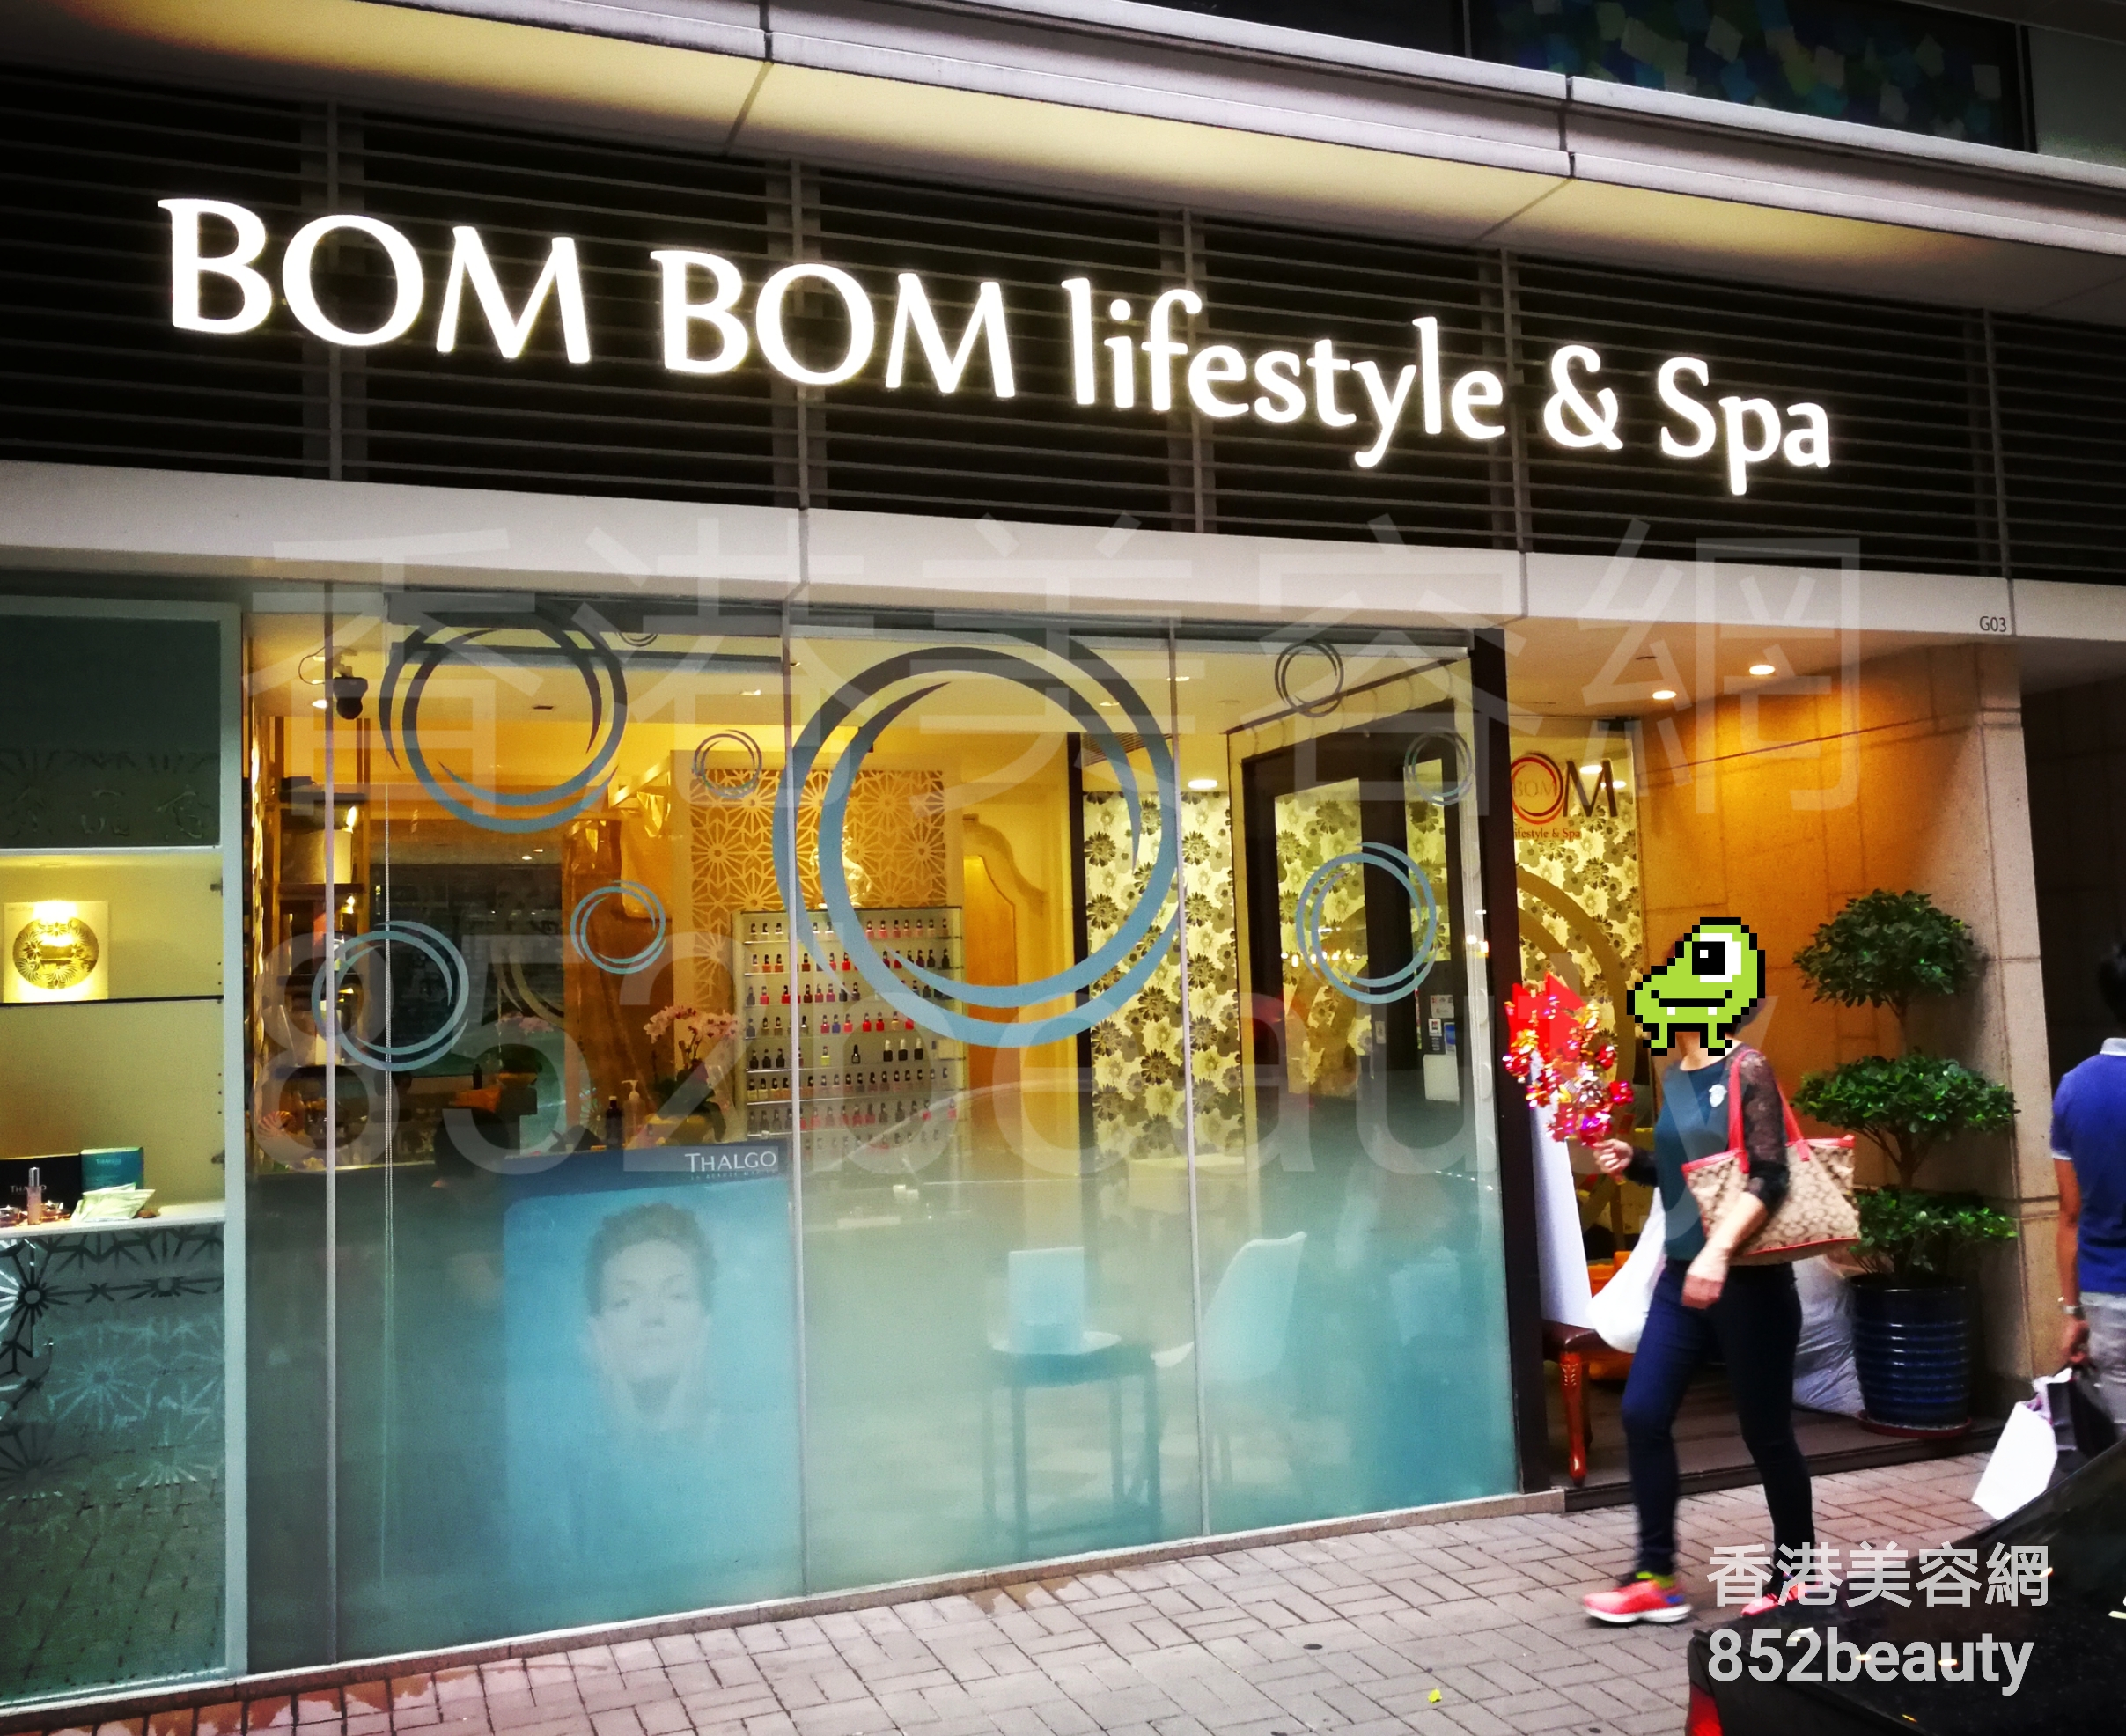 美容院: BOM BOM lifestyle & Spa